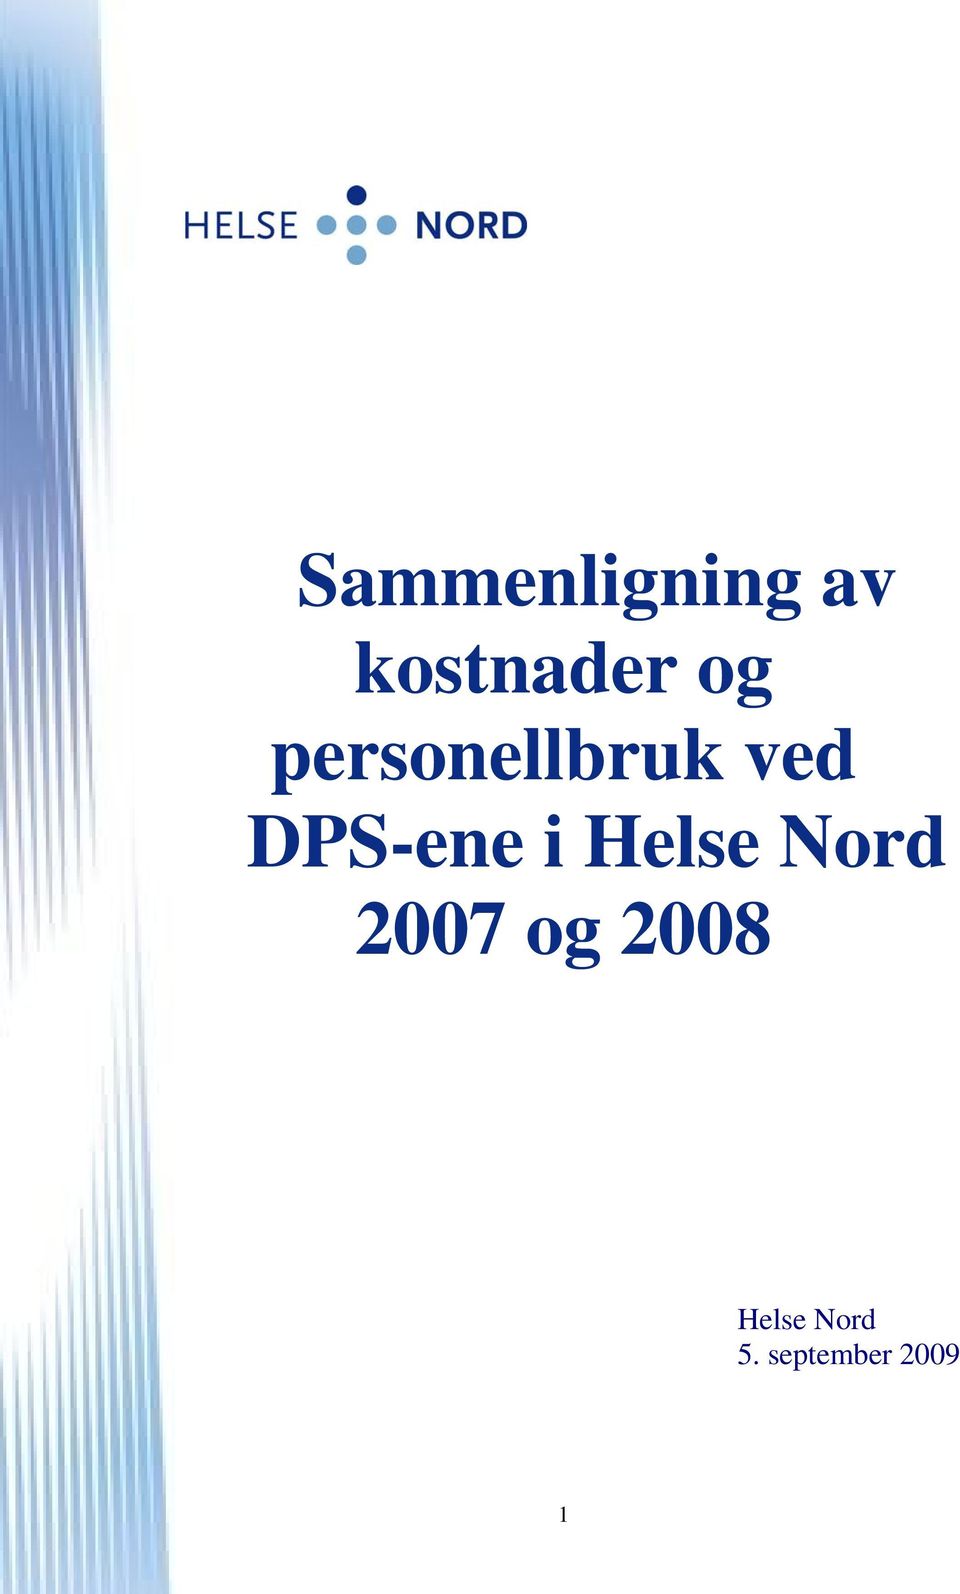 DPS-ene i Helse Nord 2007